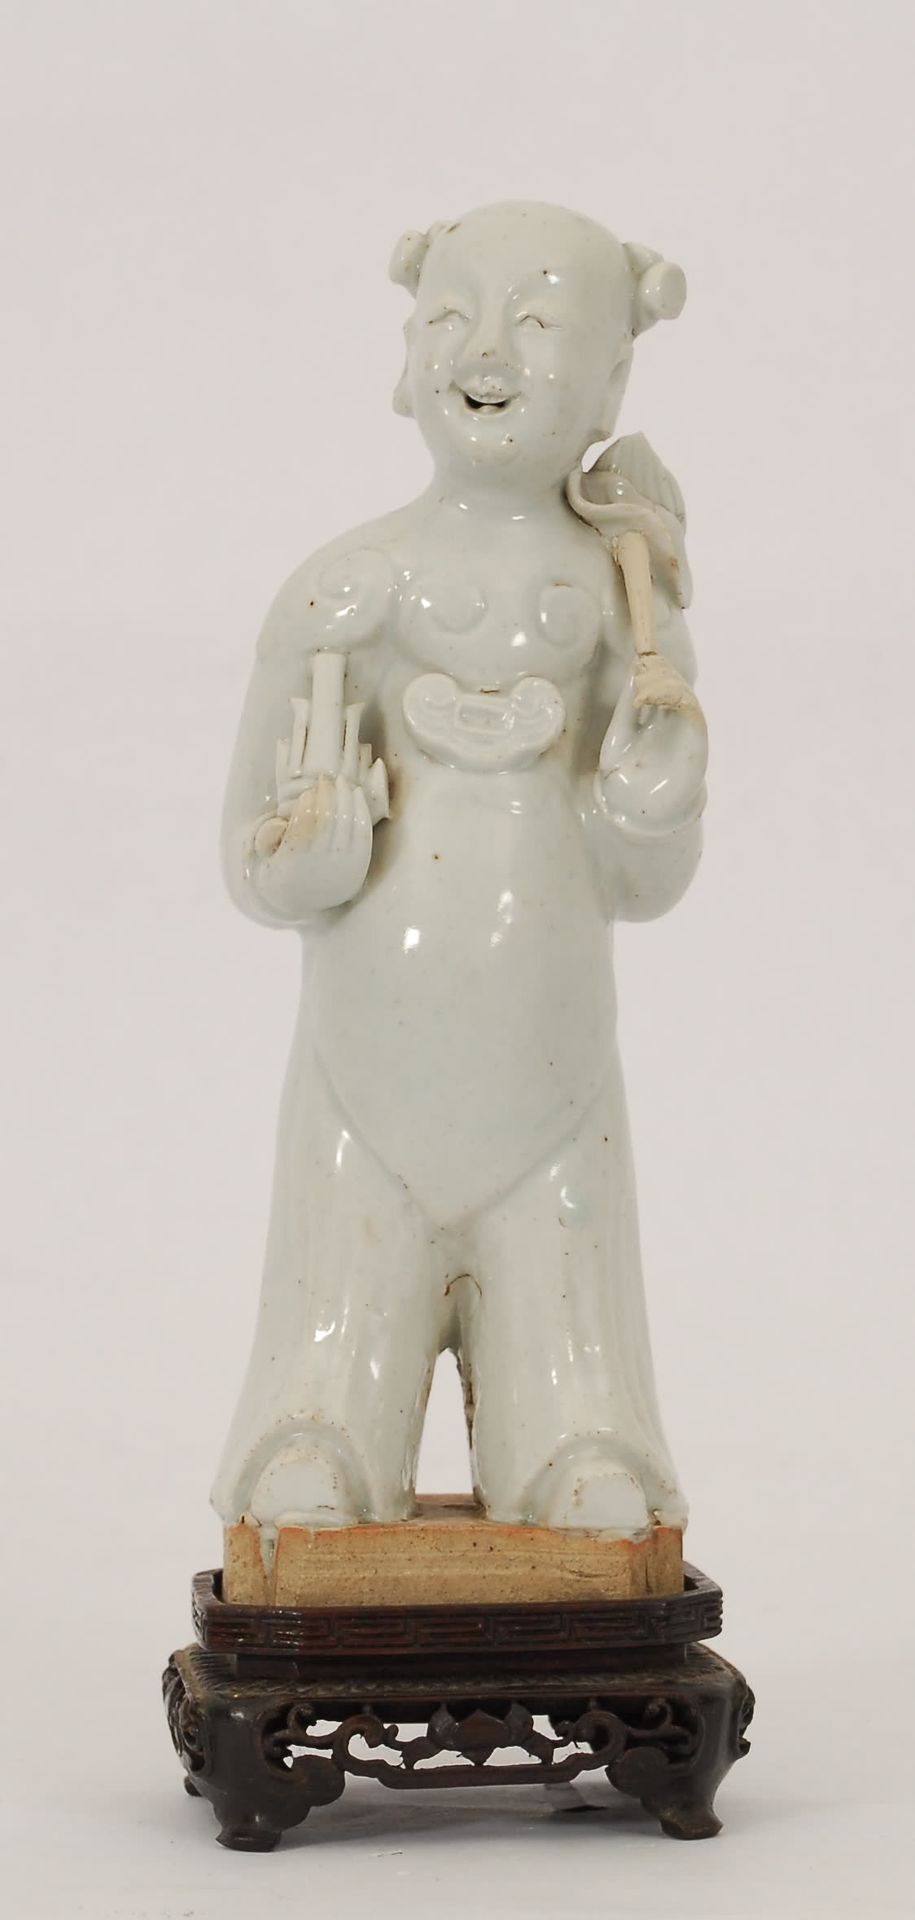 Null Personnage debout
Blanc de Chine (anciennes restaurations).
H. 20 cm.